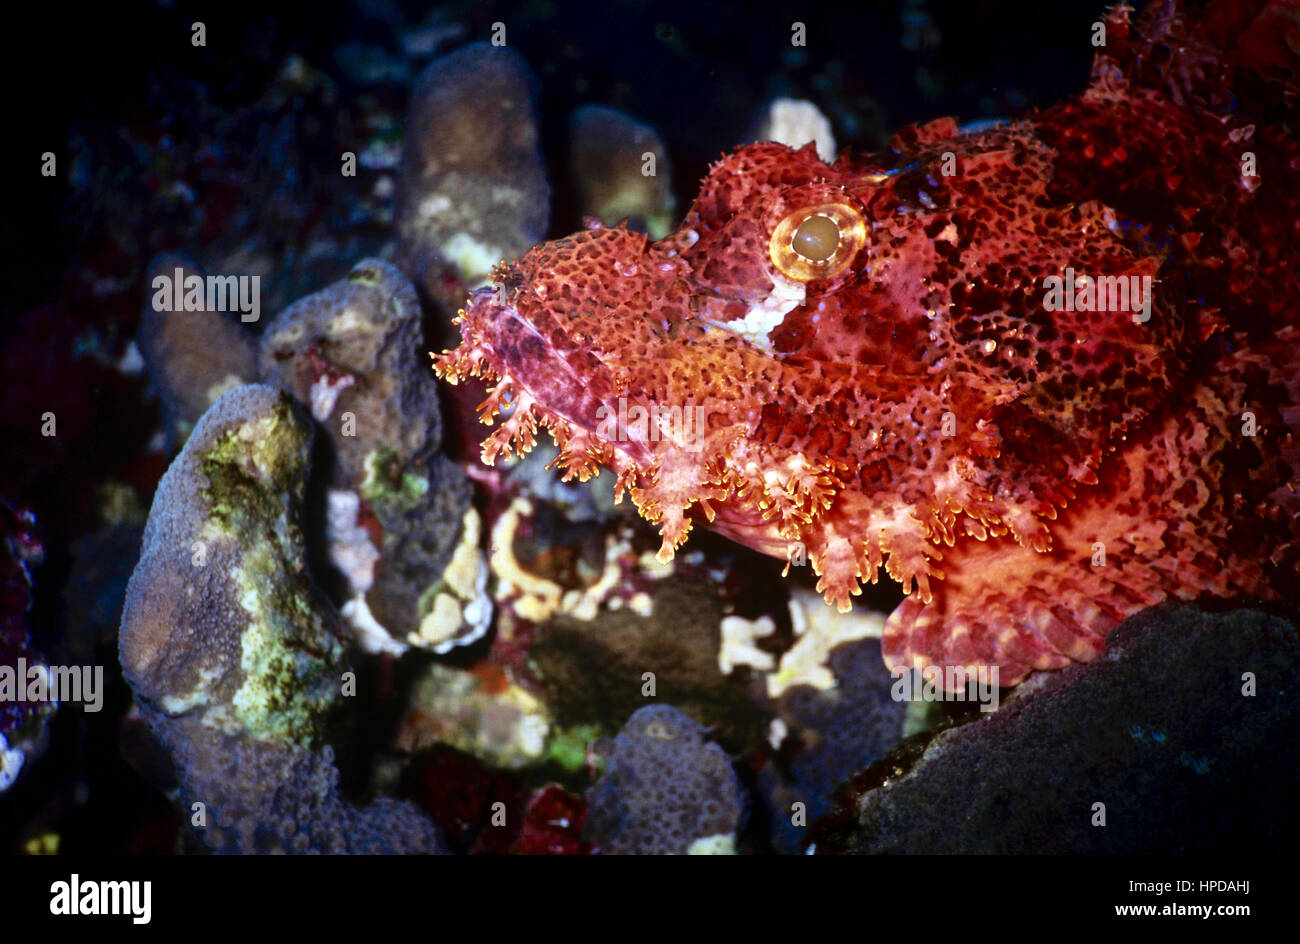 Le barbu scorpionfish (Scorpaenopsis Barbata) - une embuscade predator - s'appuie pour la protection sur son camouflage et sur ses épines venimeuses. Mer Rouge. Banque D'Images